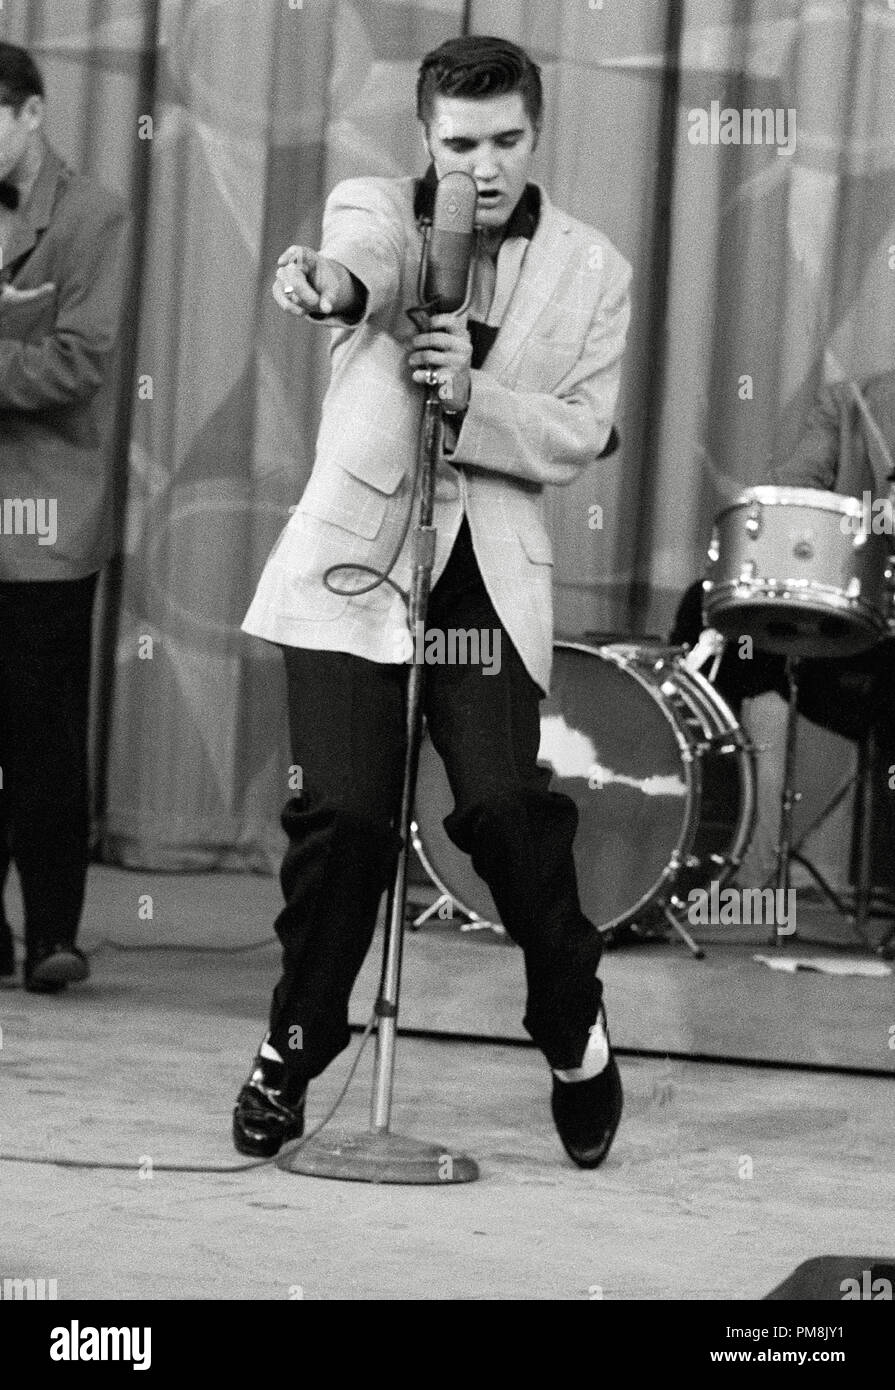 (Archivística Cine Clásico - Elvis Presley retrospectiva) Elvis Presley, 1956. Archivo de referencia # 31616 062tha Foto de stock